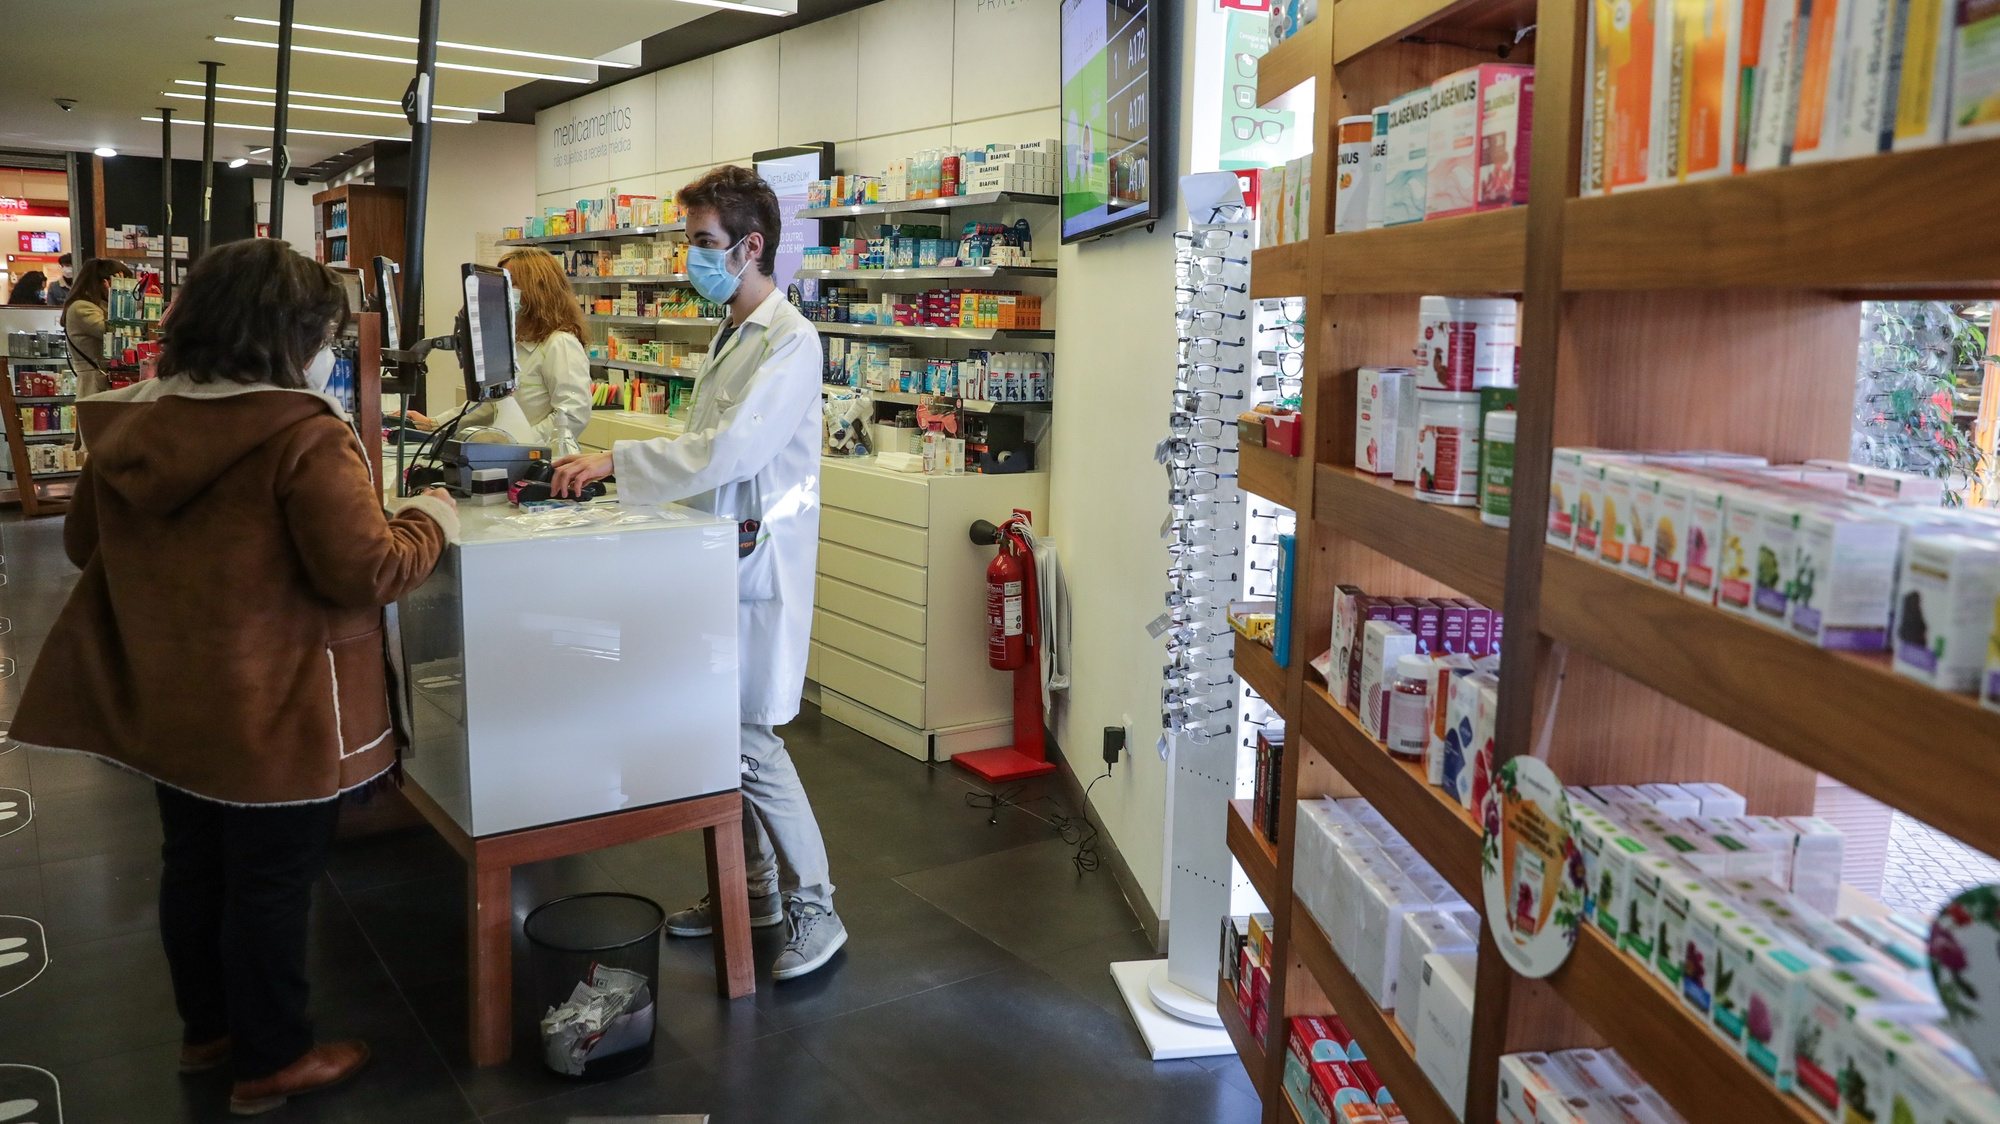 Uma utente compra uma série de testes de deteção de covid 19 numa farmácia de um centro comercial em Lisboa. As farmácias preparam-se para uma maior procura por testes para deteção de covid-19 nos próximos dias, aumentando os stocks e alargando horários para a testagem, sujeita a marcação prévia em Lisboa, 26 de novembro 2021. (ACOMPANHA TEXTO DA LUSA) TIAGO PETINGA/LUSA